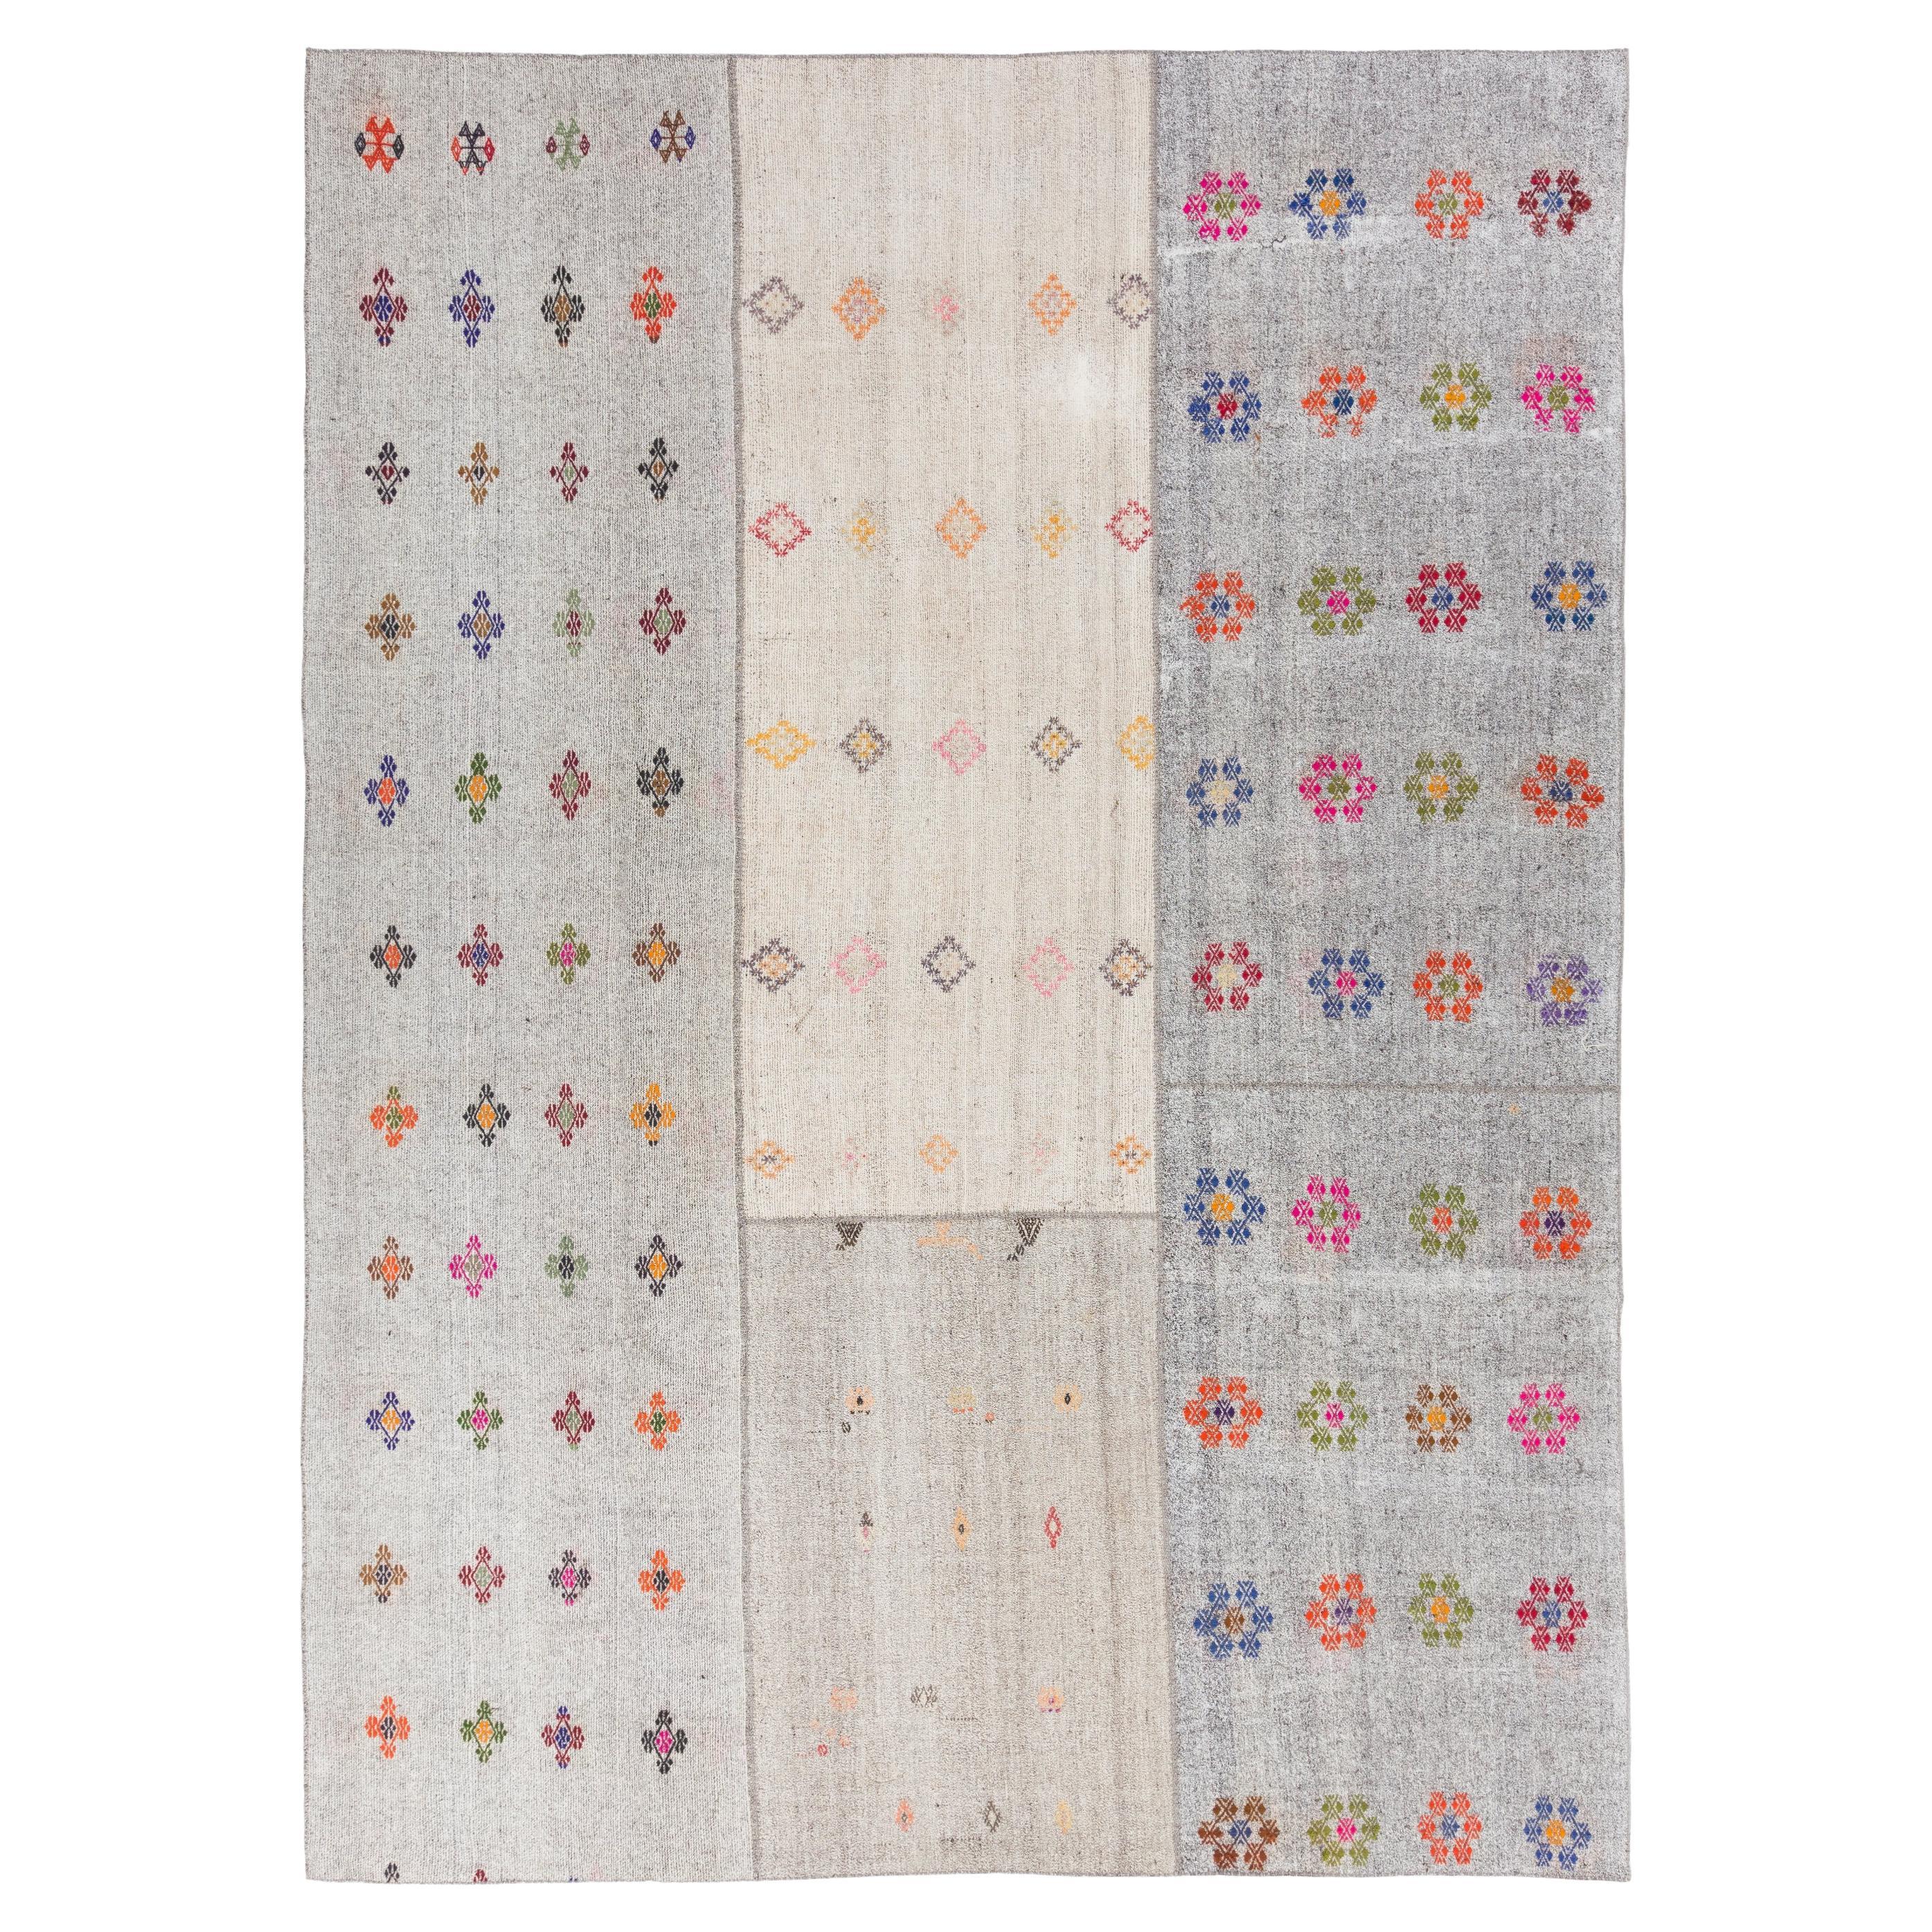 10.5x14.3 Ft Vintage Türkischer Kilim Teppich. Handgefertigter Bodenbezug, geblümter Teppich. 